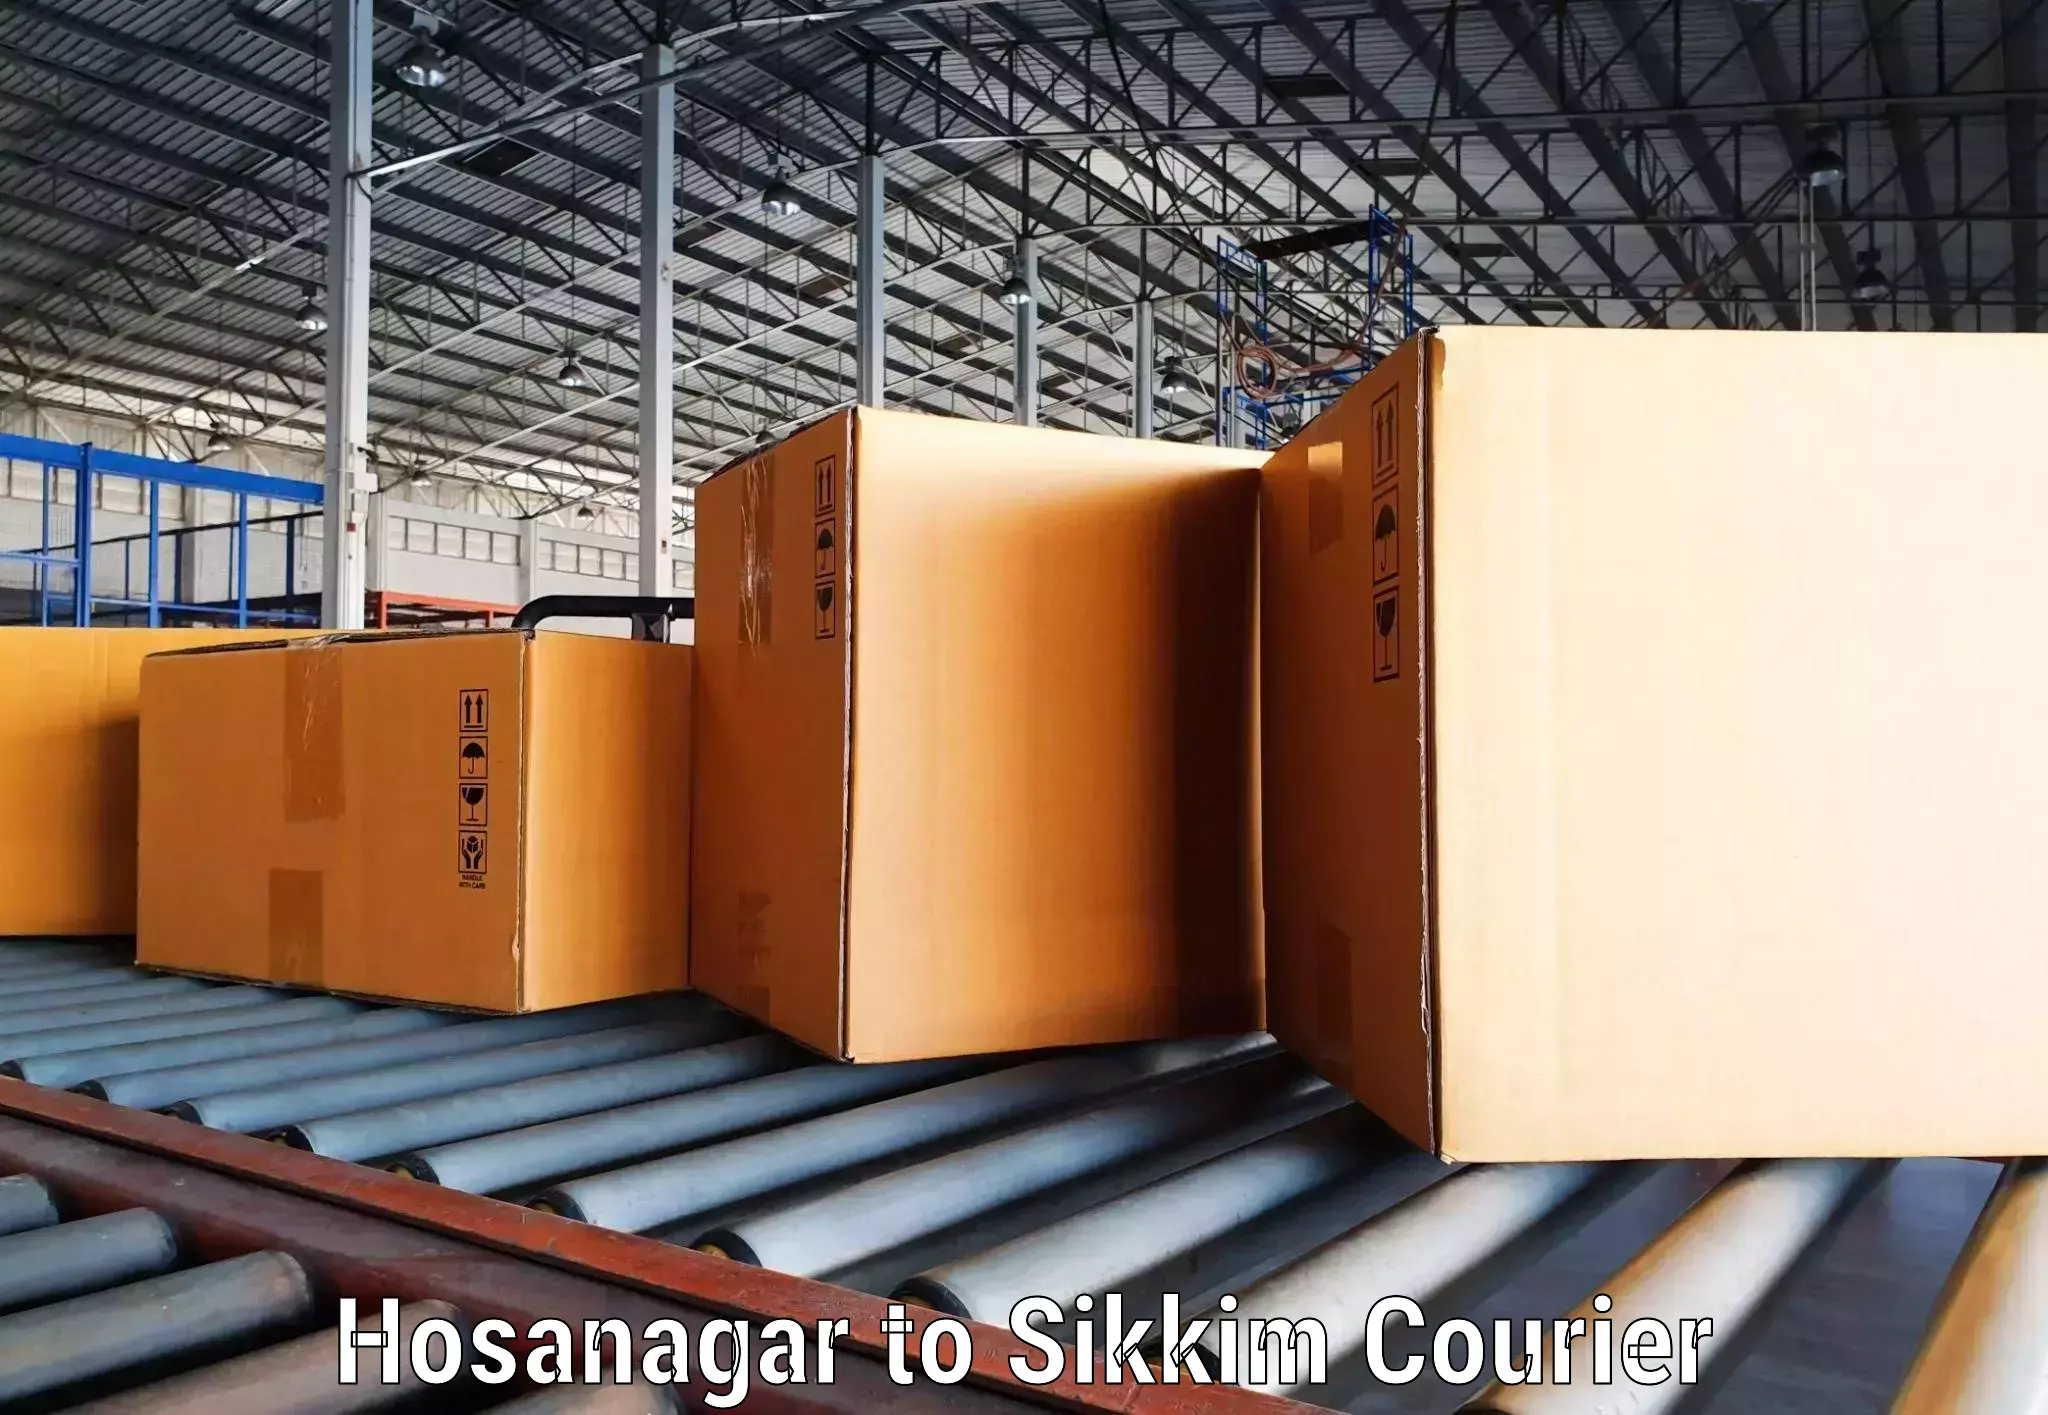 Express package handling Hosanagar to Sikkim